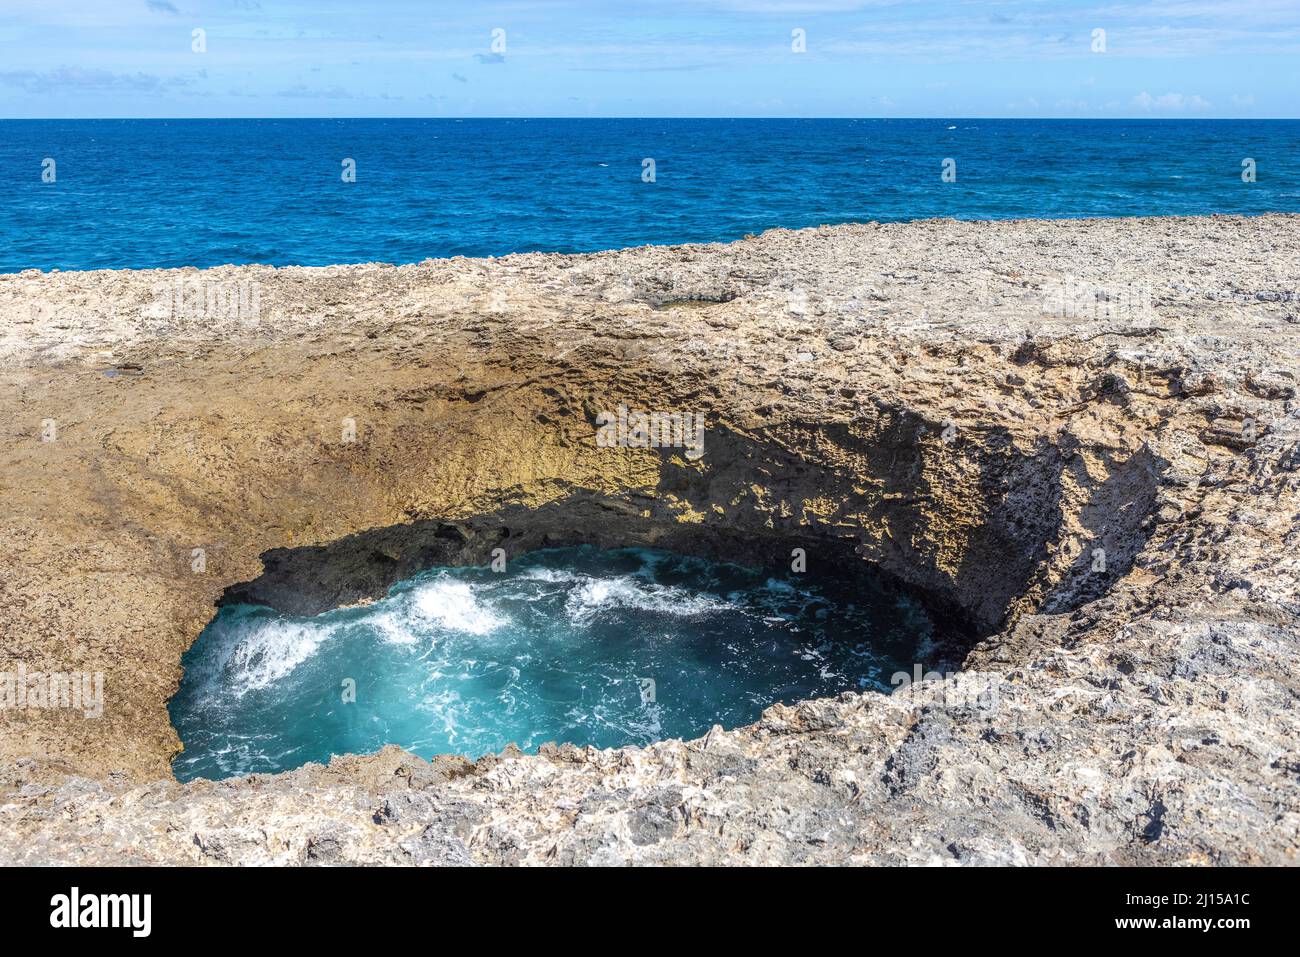 Agujero de Watamula - vista natural en la isla Curacao en el Caribe Foto de stock